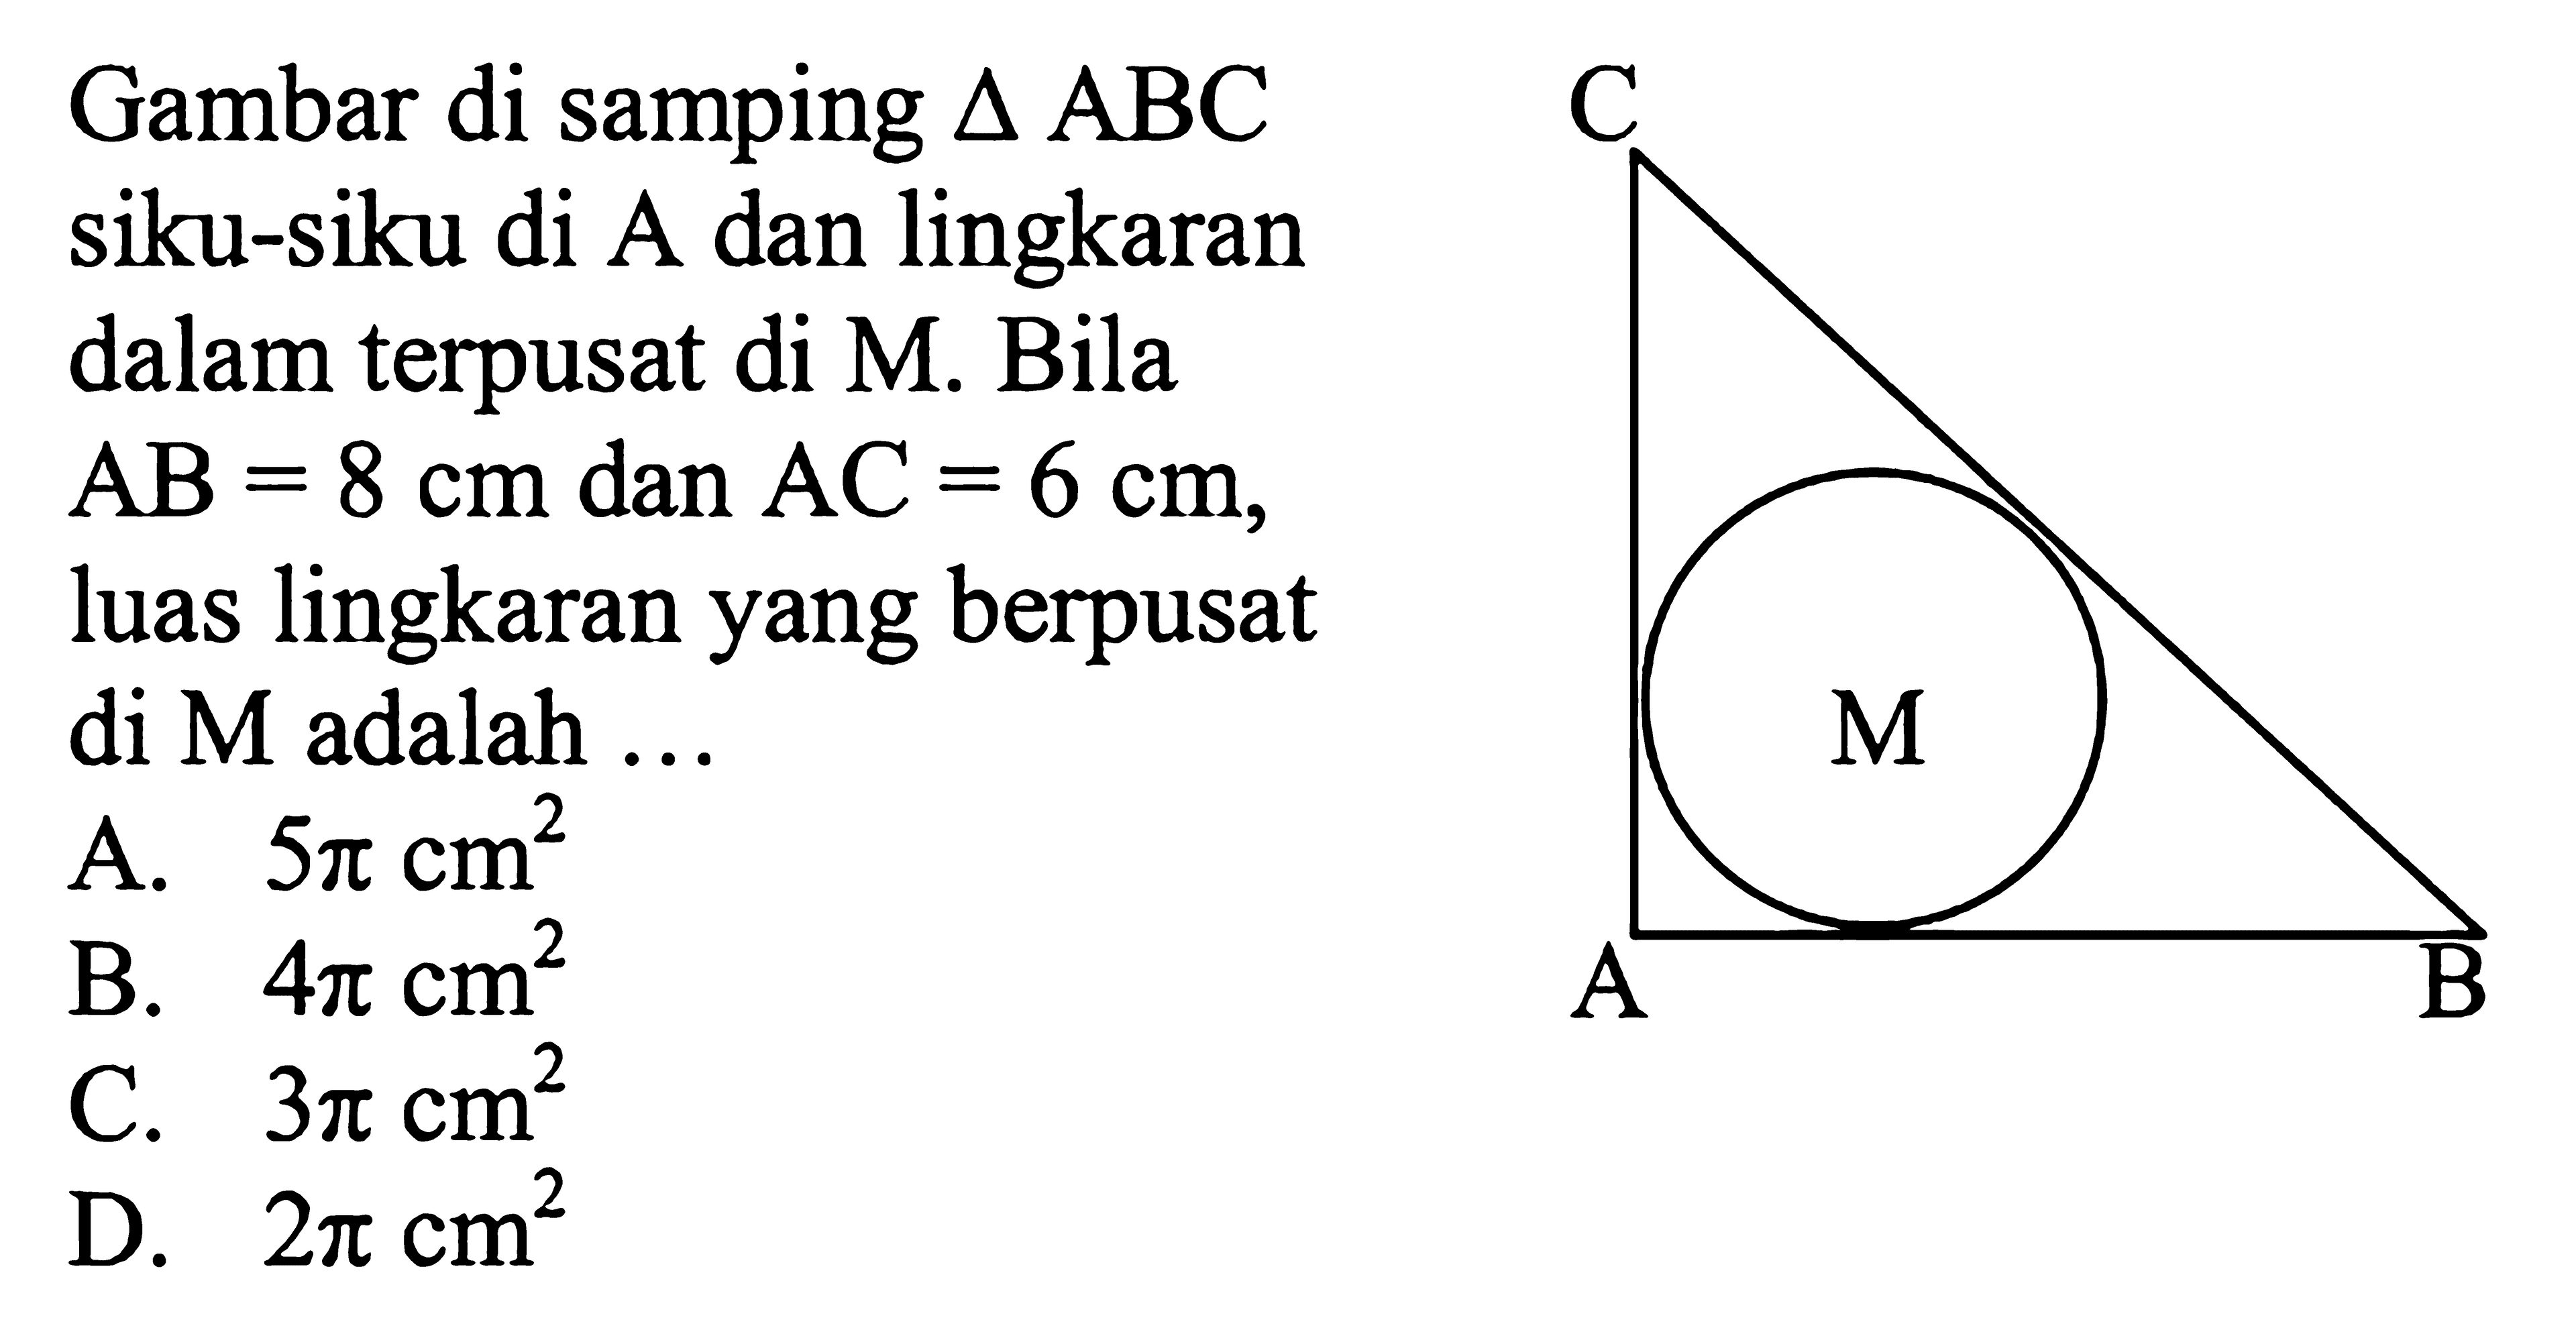 Gambar di samping segitiga ABC siku-siku di A dan lingkaran dalam terpusat di M. Bila AB=8 cm dan AC=6 cm, luas lingkaran yang berpusat di M adalah ...
